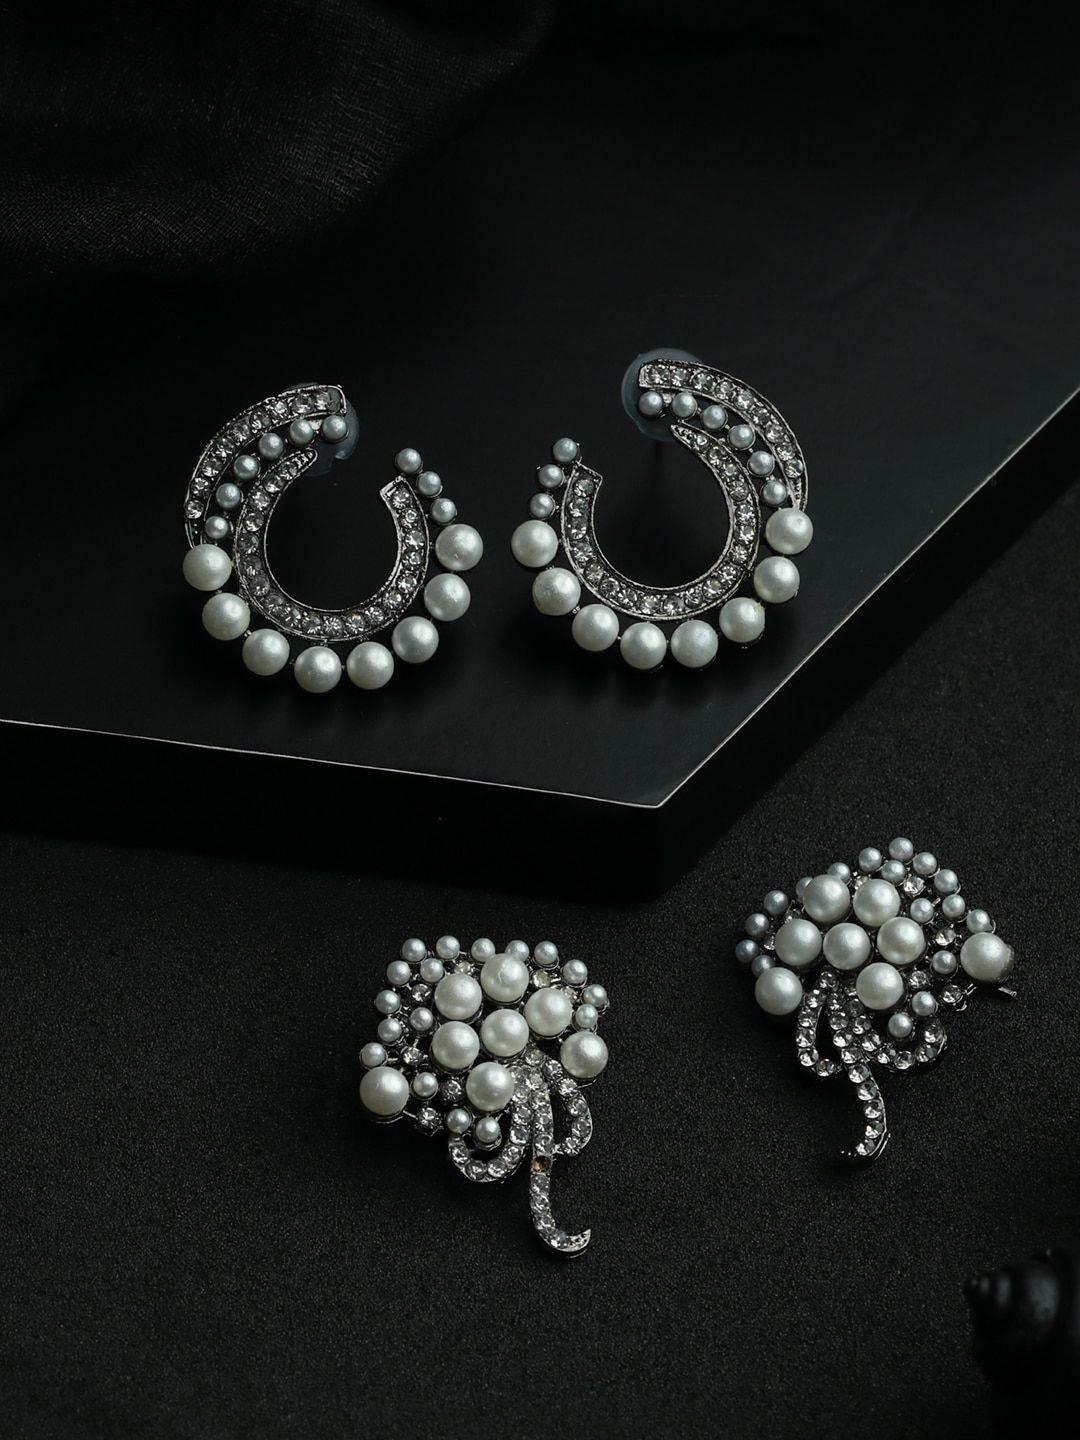 Priyaasi Silver-Toned & Black Pack Of 2 Oxidised Studs Earrings Price in India